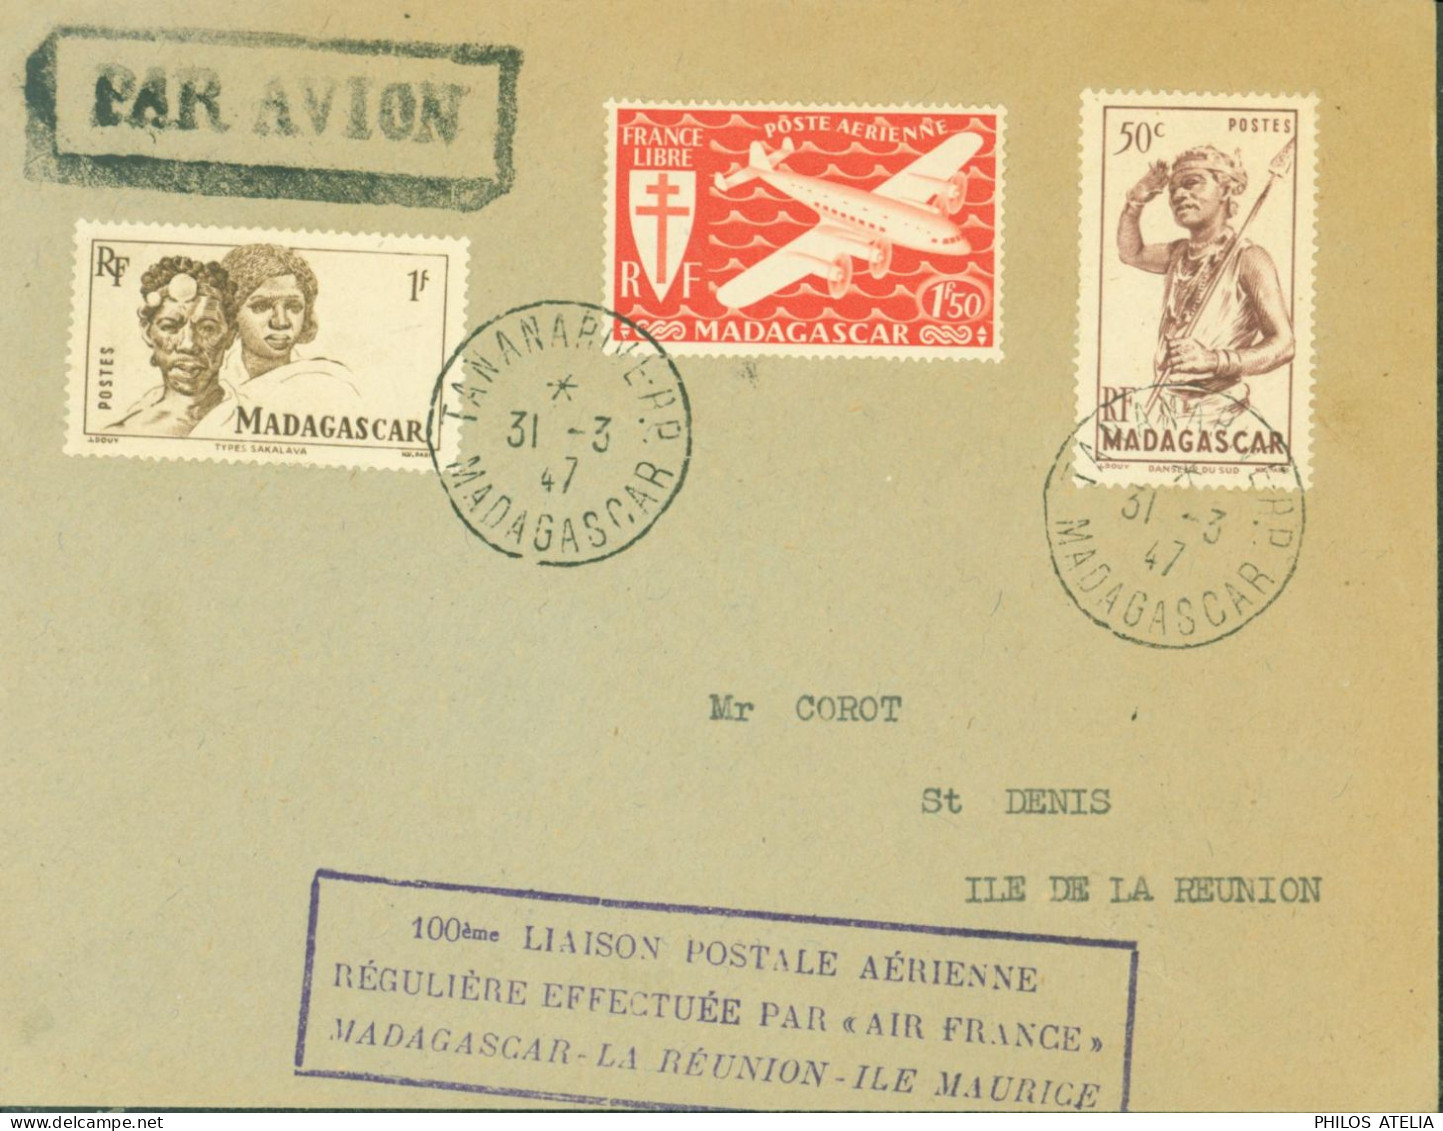 100 Liaison Postale Aérienne Régulière Effectuée Par Air France Madagascar La Réunion Ile Maurice CAD Tananarive 31 3 47 - Poste Aérienne